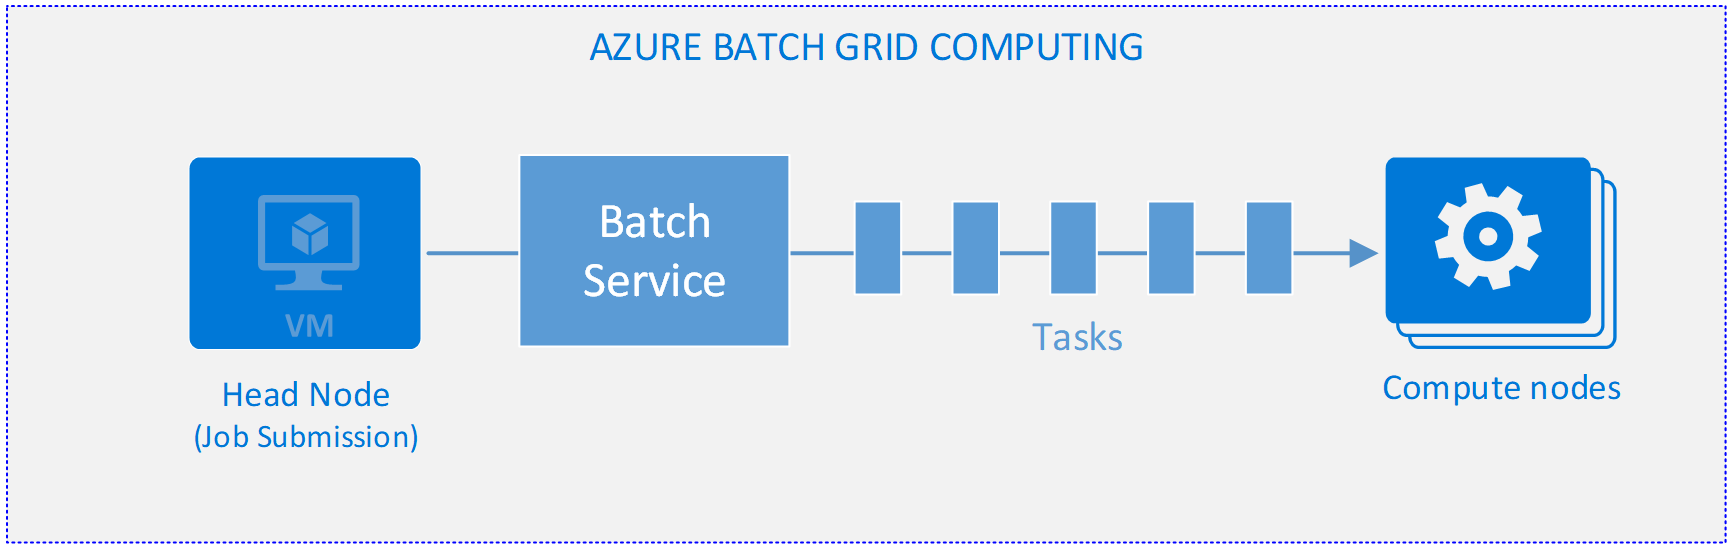 示範 Azure Batch Grid 運算的圖表。